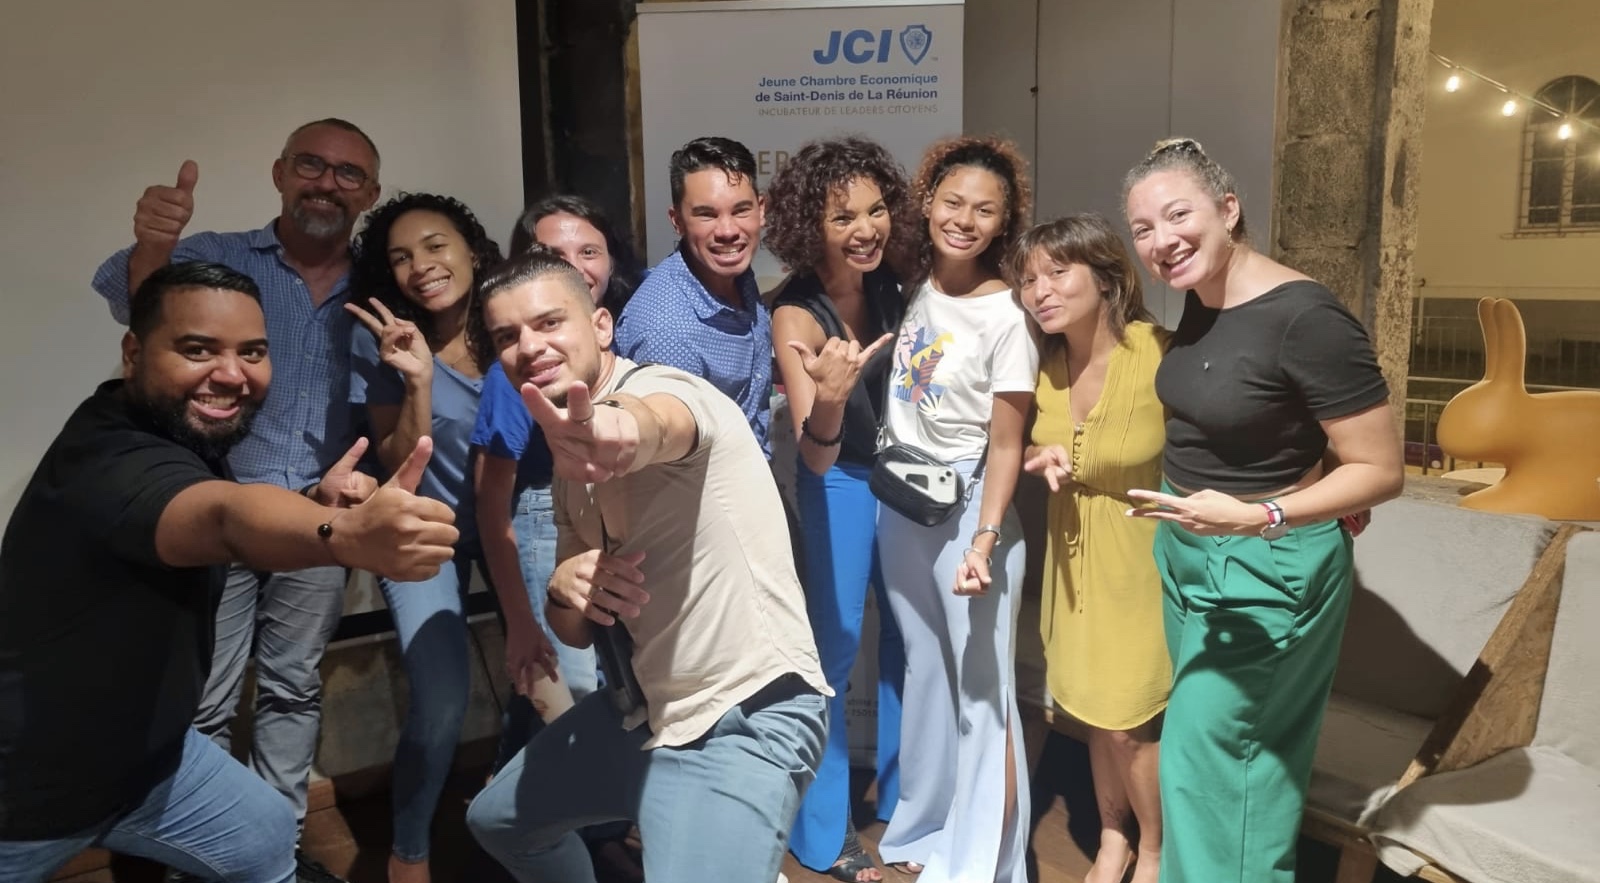 La Réunion : Changement de présidence de la Jeune Chambre Économique de Saint-Denis